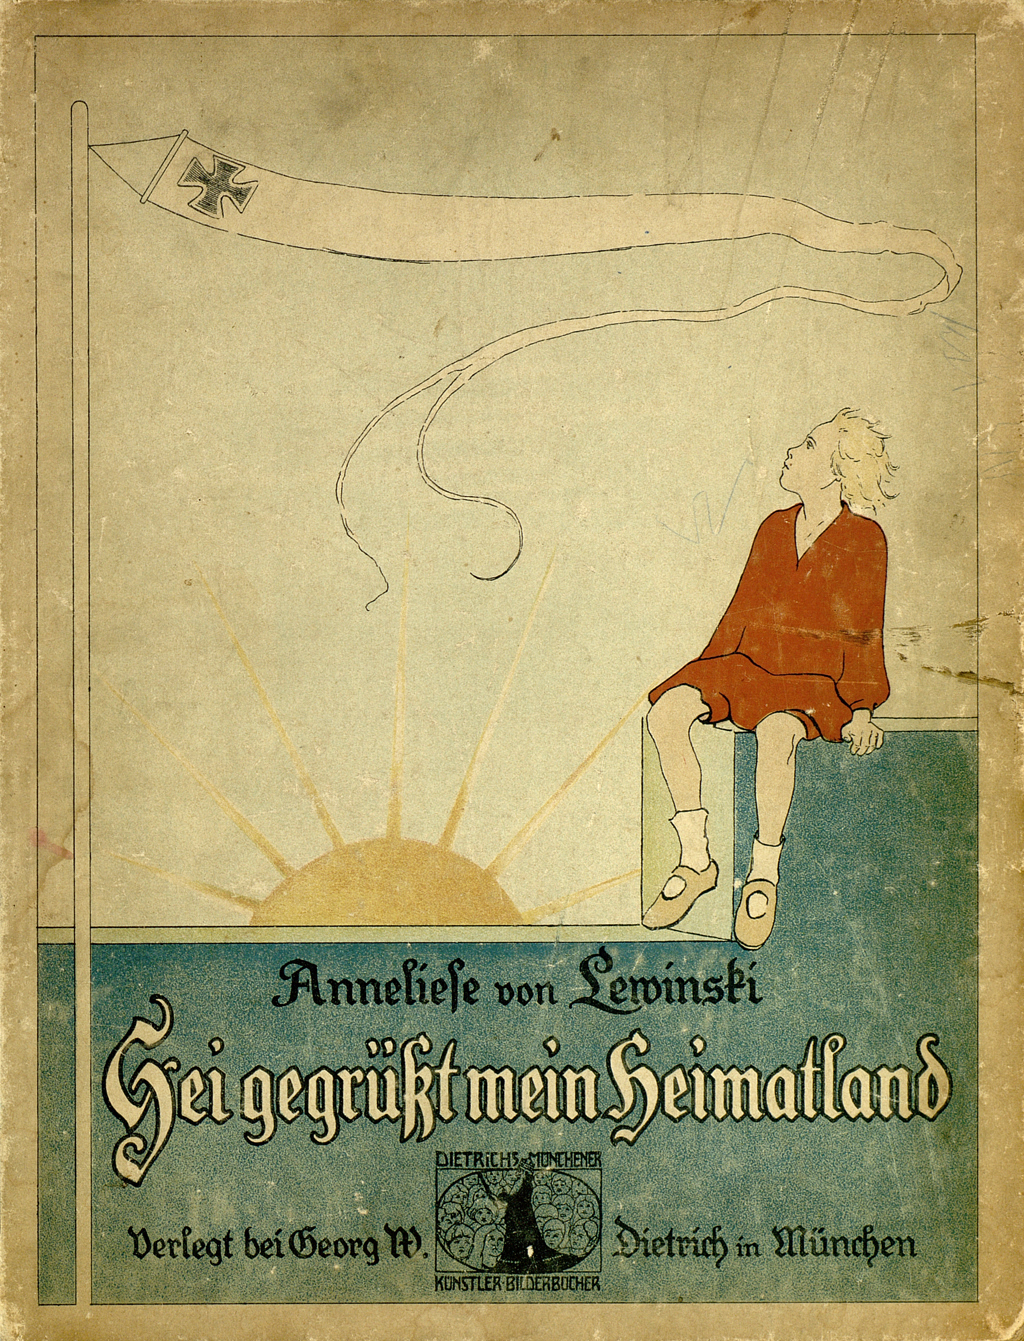 Buchvoer mit einem kleinen Kind, einem Drachen mit Kreuz und der untergehenden Sonne im Hintergrund.